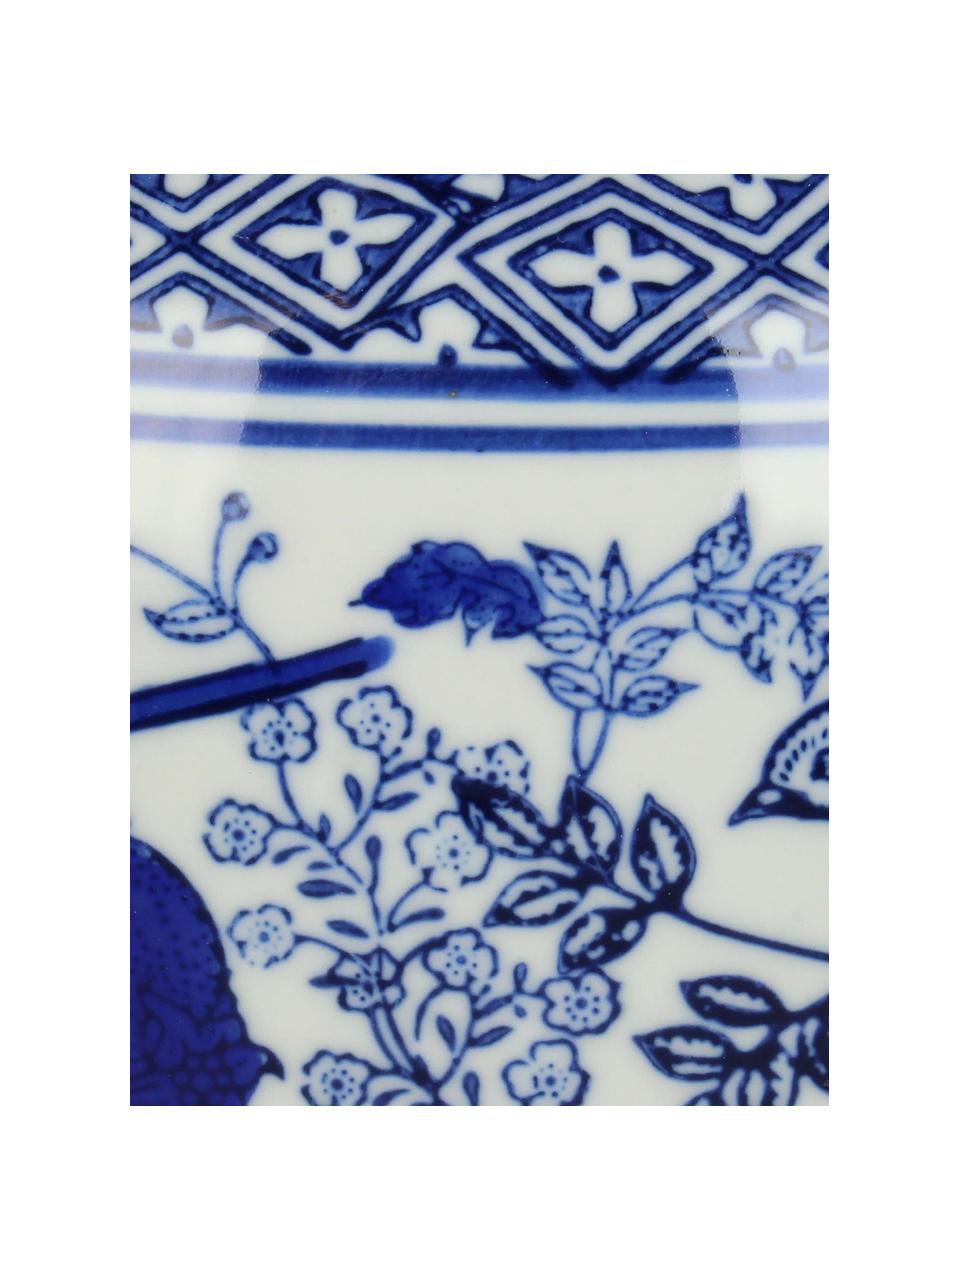 Osłonka na doniczkę z porcelany Birds, Porcelana, Niebieski, biały, Ø 25 x W 28 cm